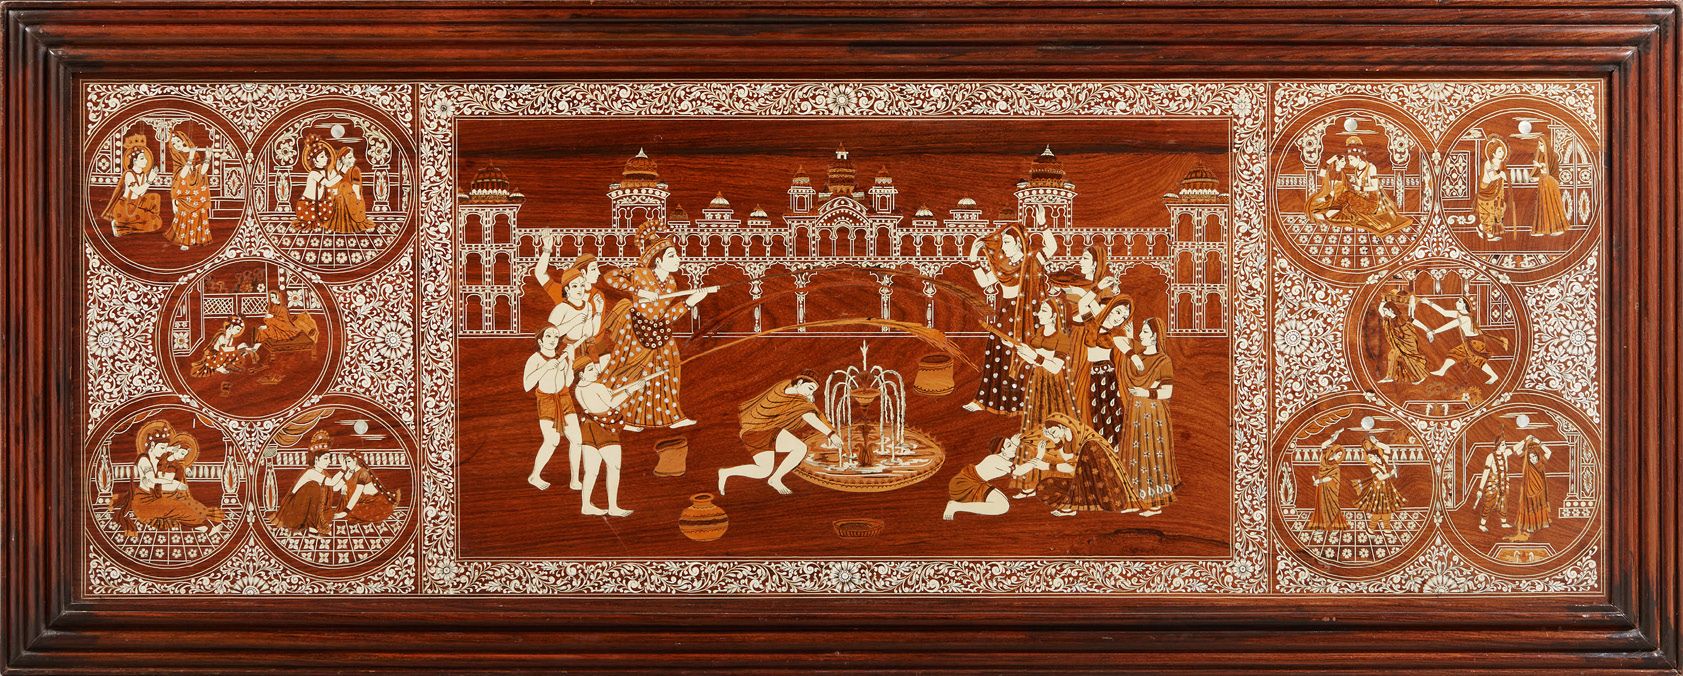 INDE 
尺寸：57 x 162 cm
(无框) 嵌有骨的大型木板，描绘了人物和宫殿场景。